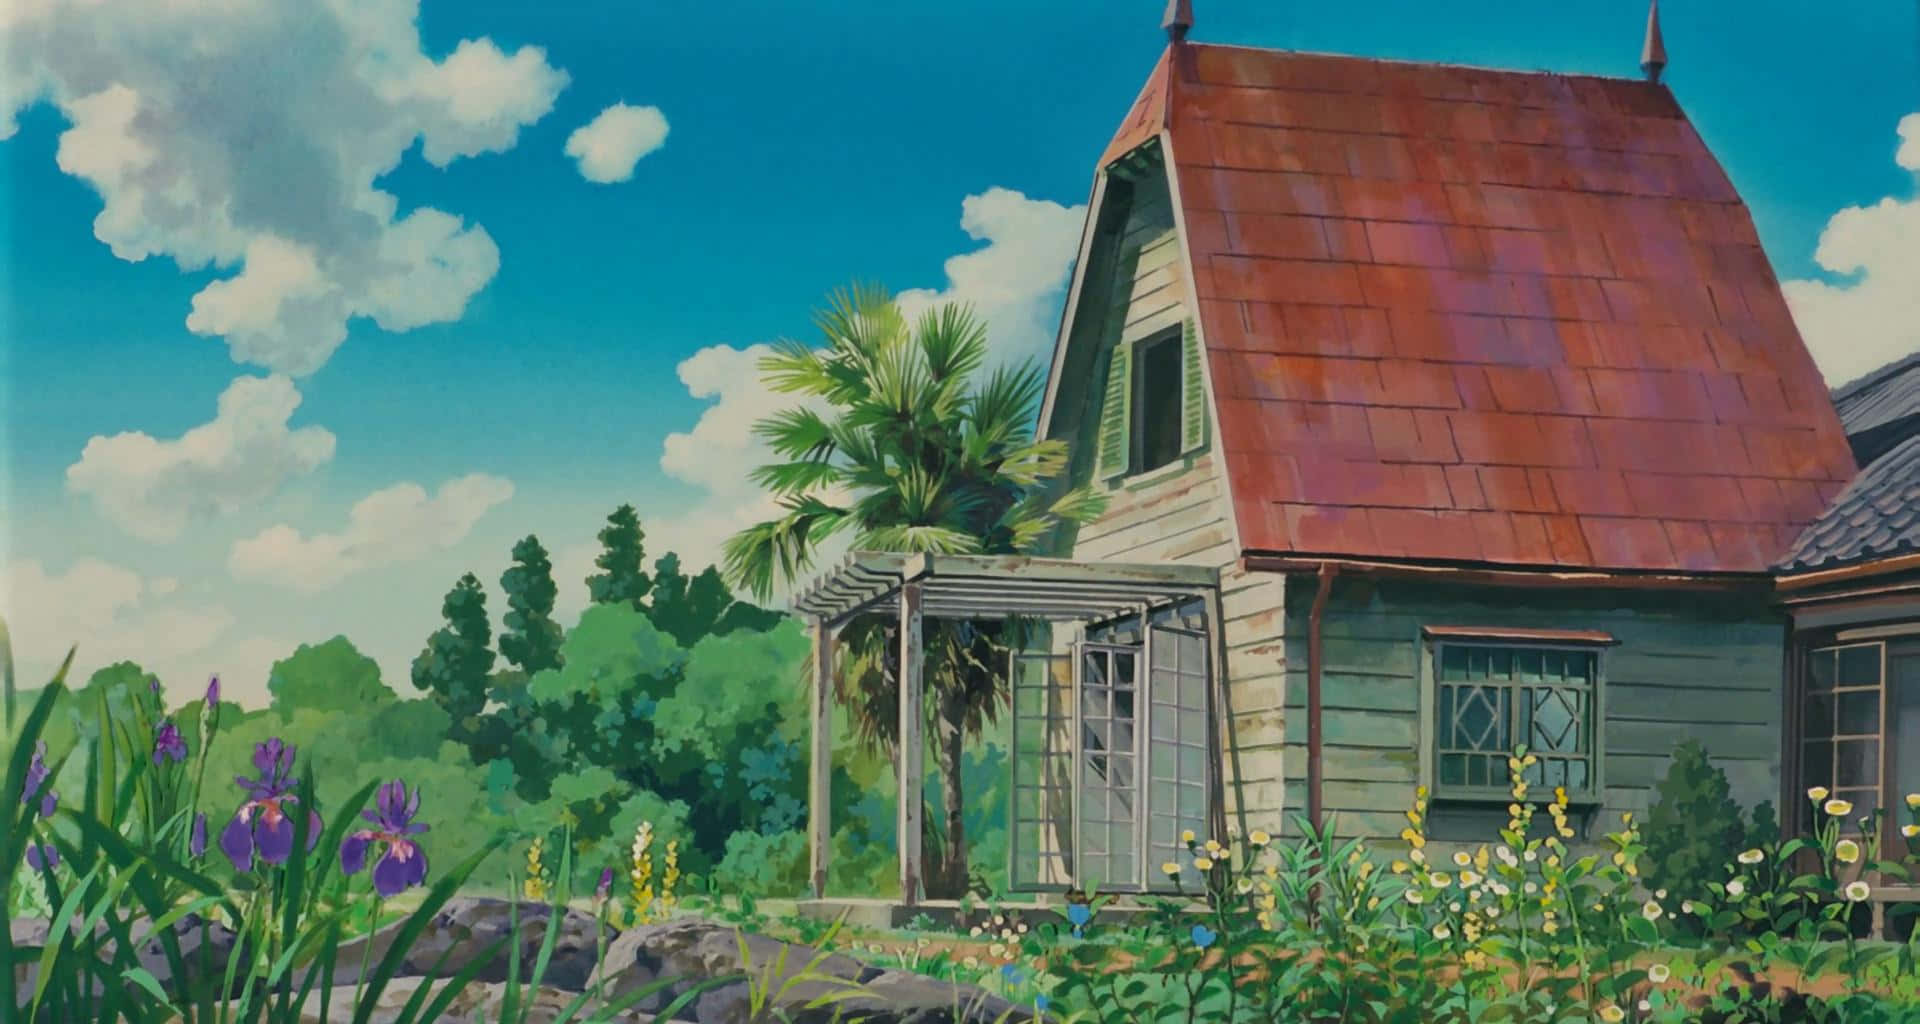 Magical Scenery from Studio Ghibli